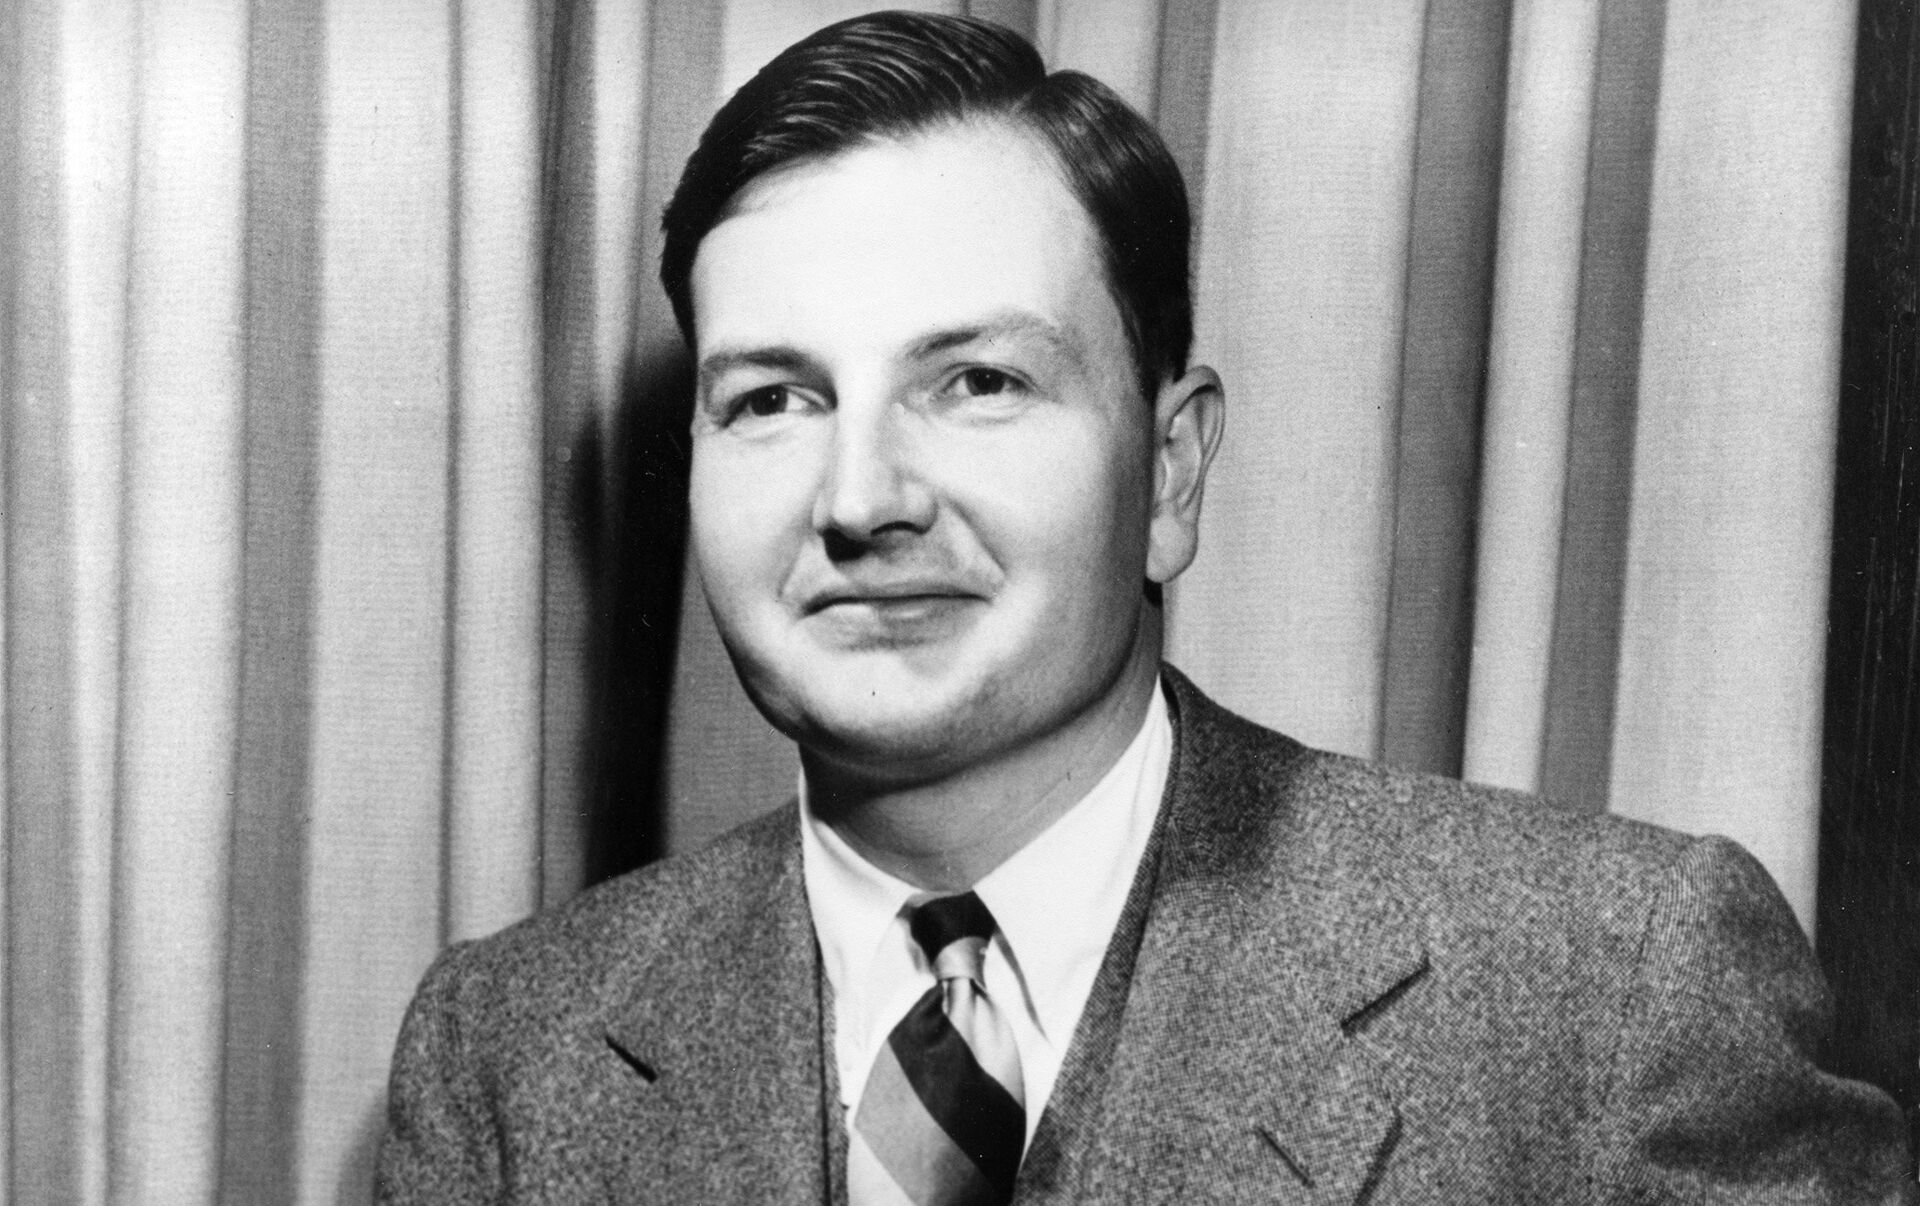 Morre aos 101 anos David Rockefeller – DW – 20/03/2017